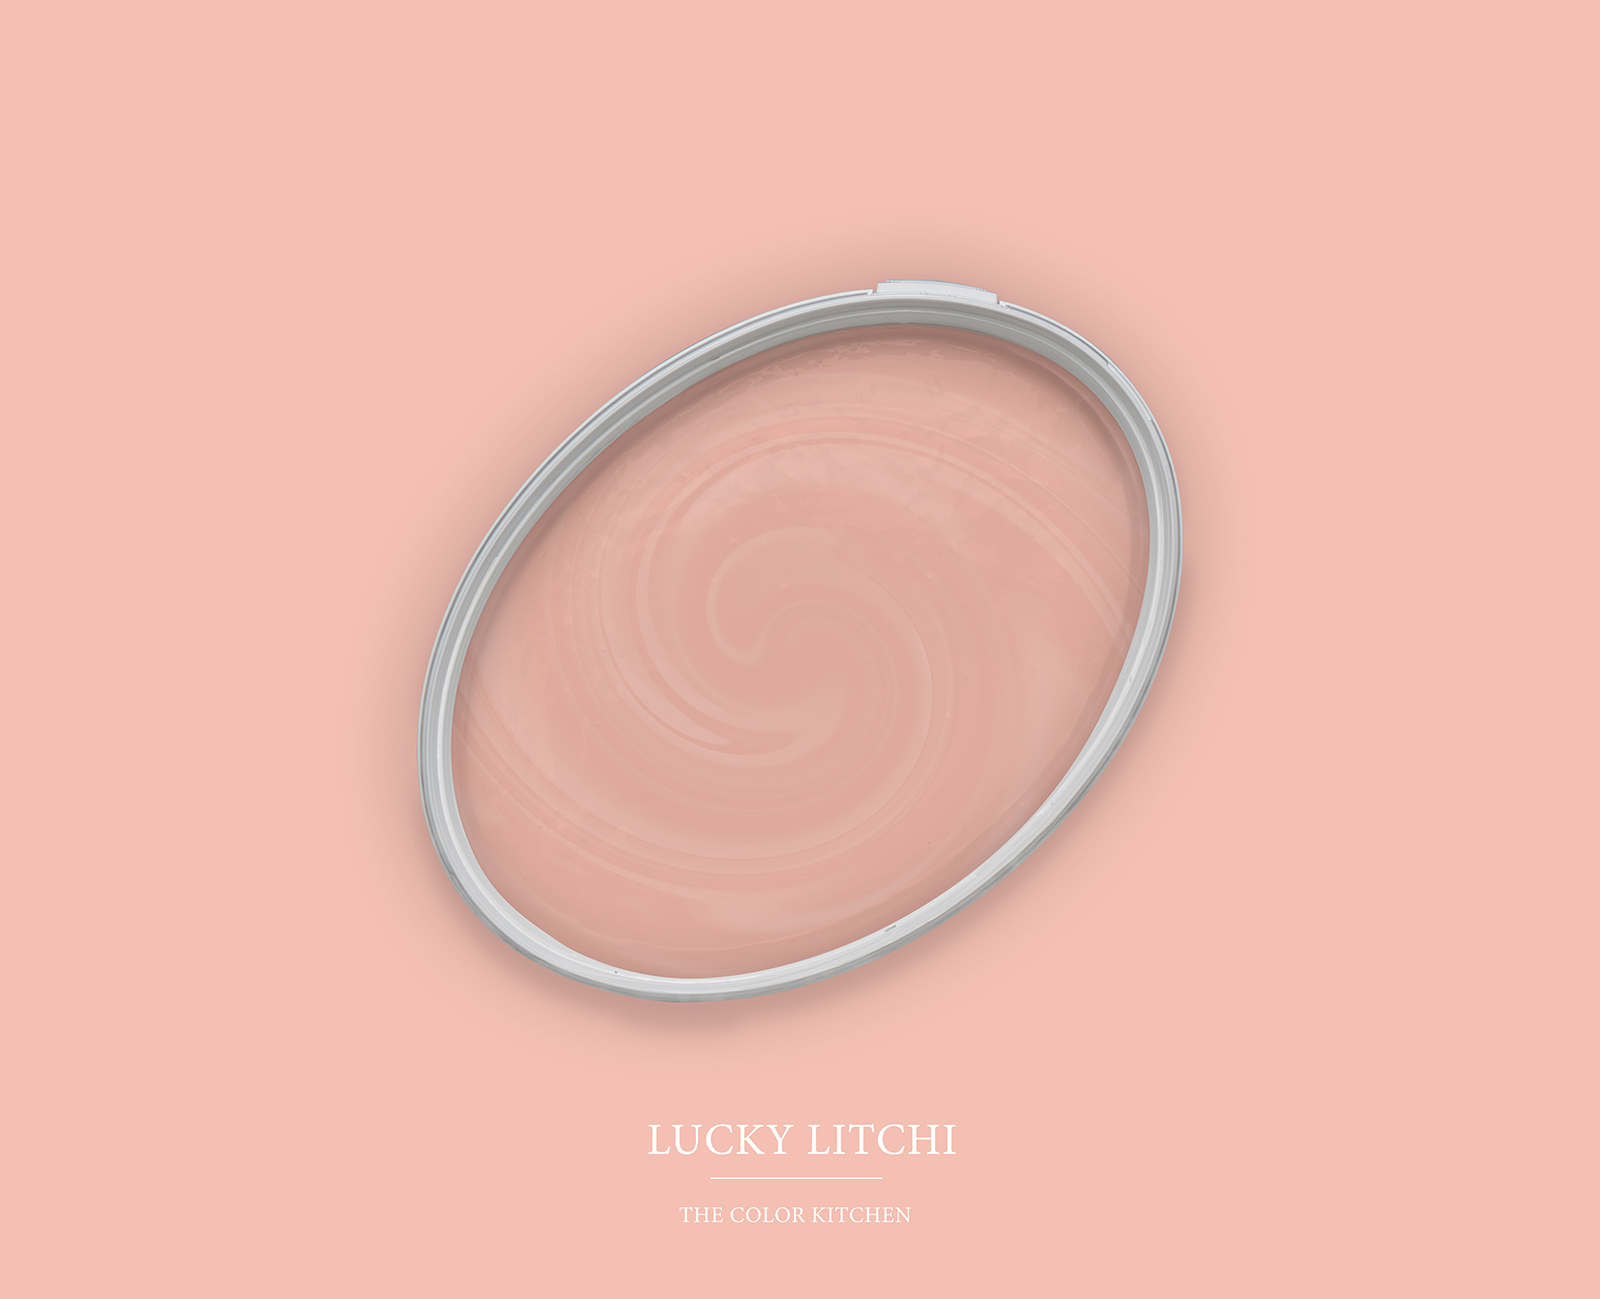 Peinture murale TCK7003 »Lucky Litchi« en rose clair – 5,0 litres
